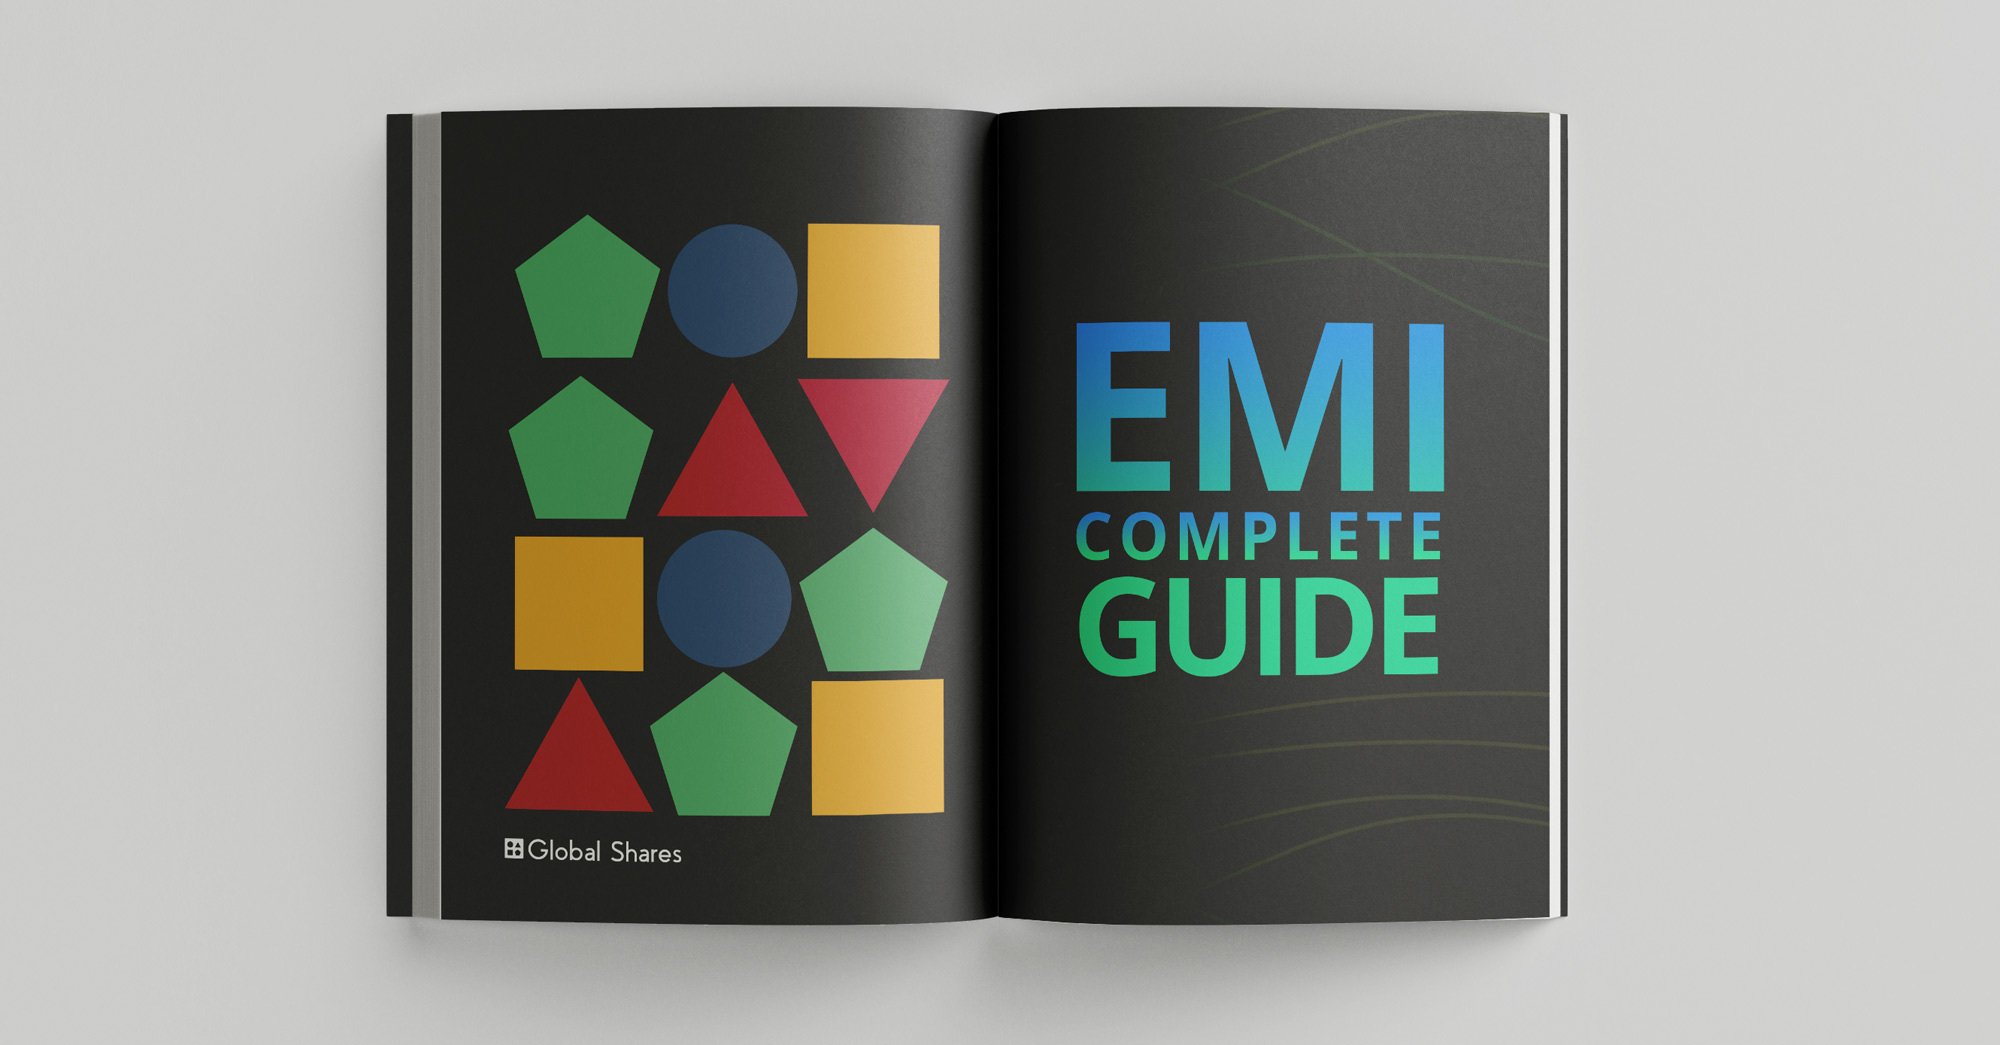 EMI Scheme: Enterprise Management Incentive